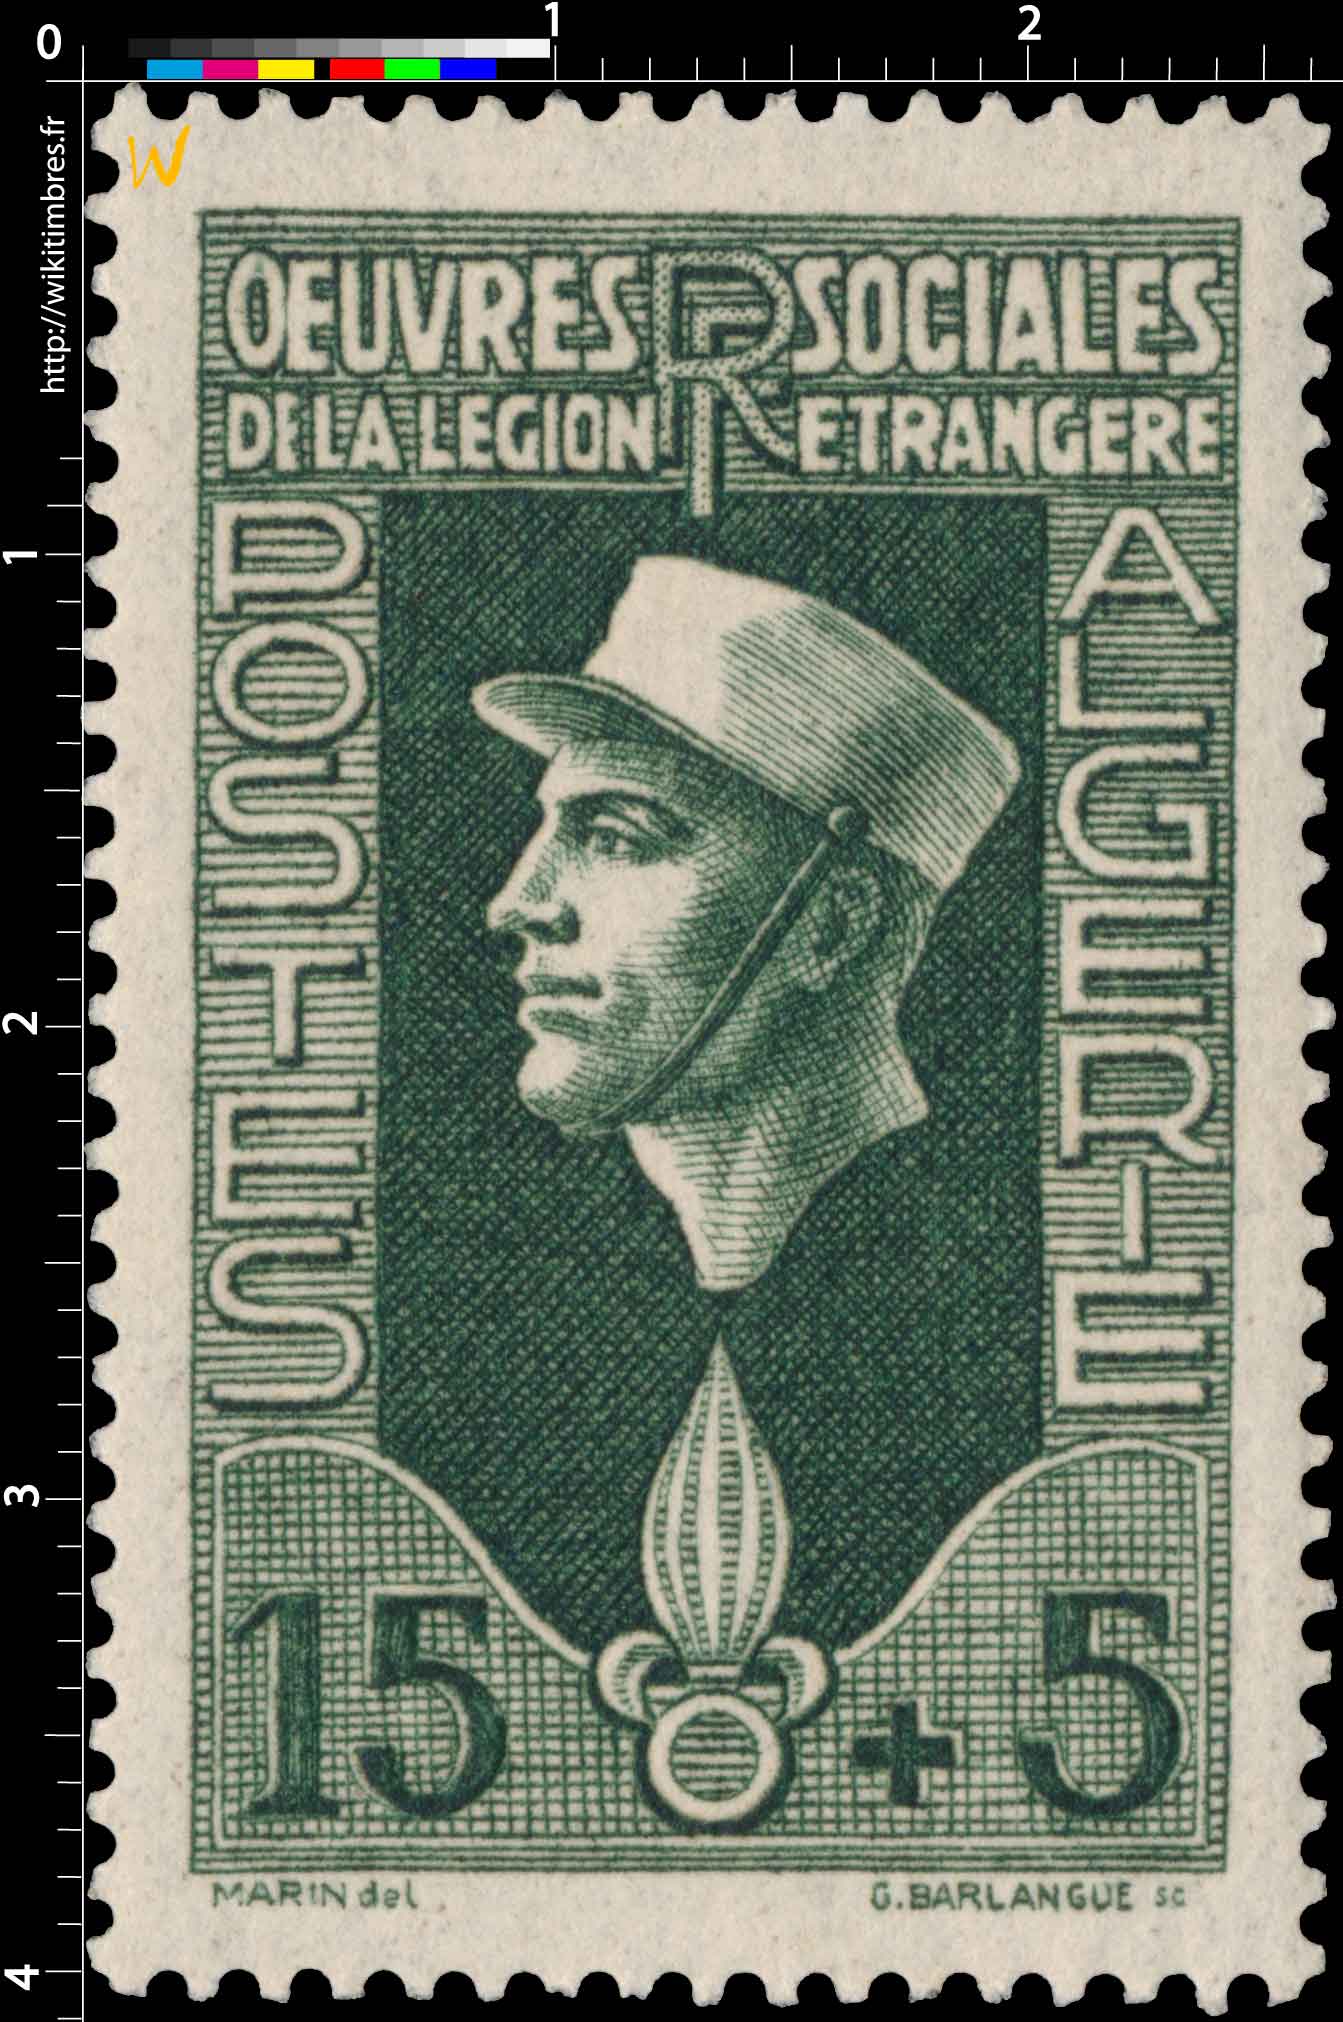 Algérie - Oeuvres de la Légion étrangère